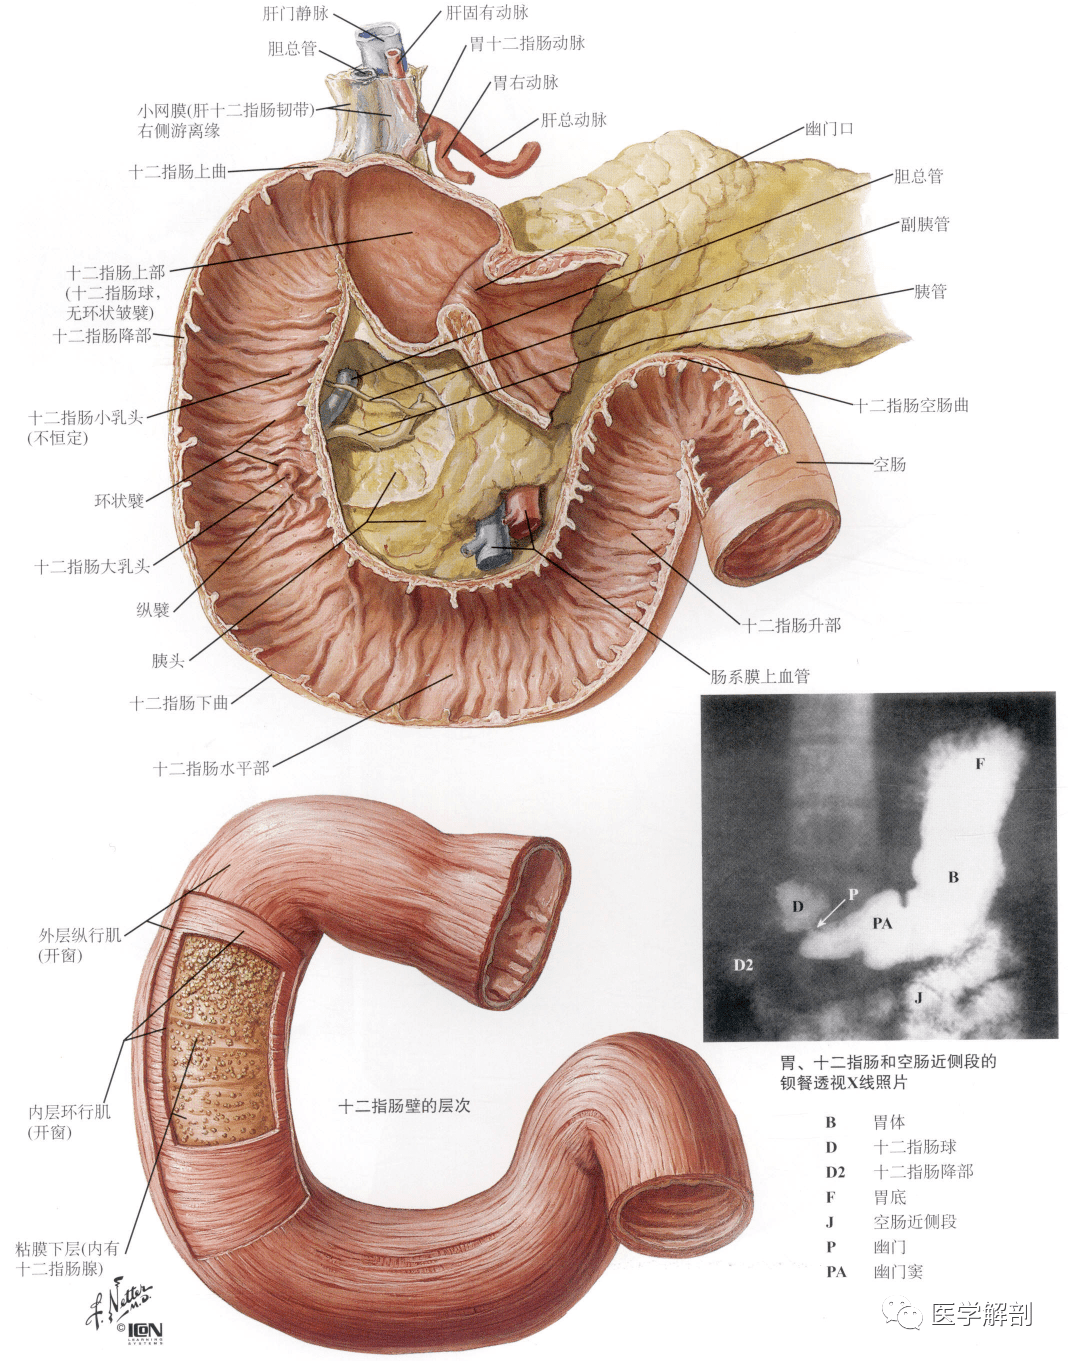 人体解剖学:消化管 | 小肠